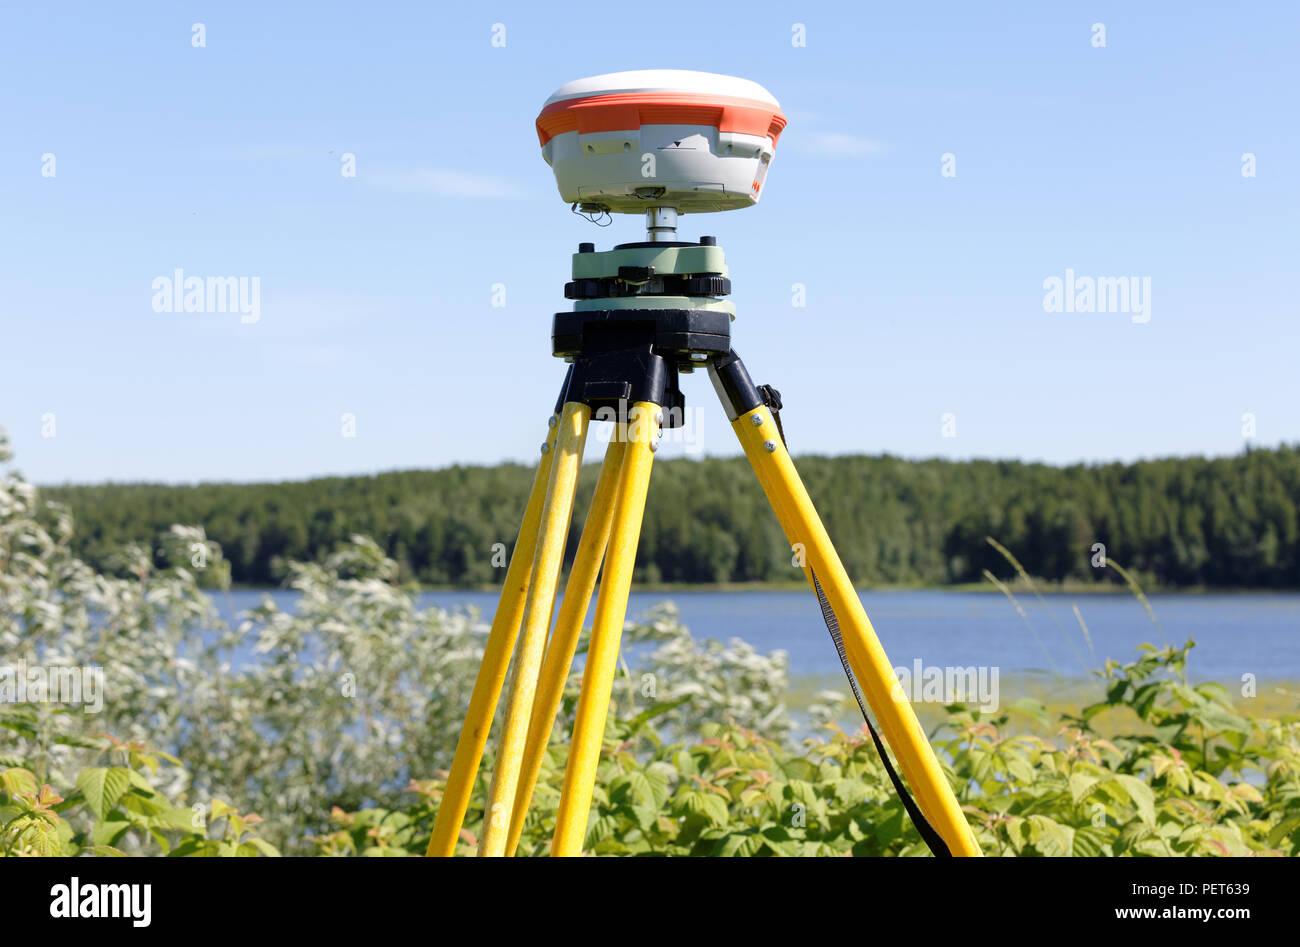 Geodätische GNSS-Empfänger im Feld in Sibirien, montiert auf einem Stativ.  Praktische Anwendung für den Betrieb in Netzwerken der permanenten  Basisstationen Stockfotografie - Alamy